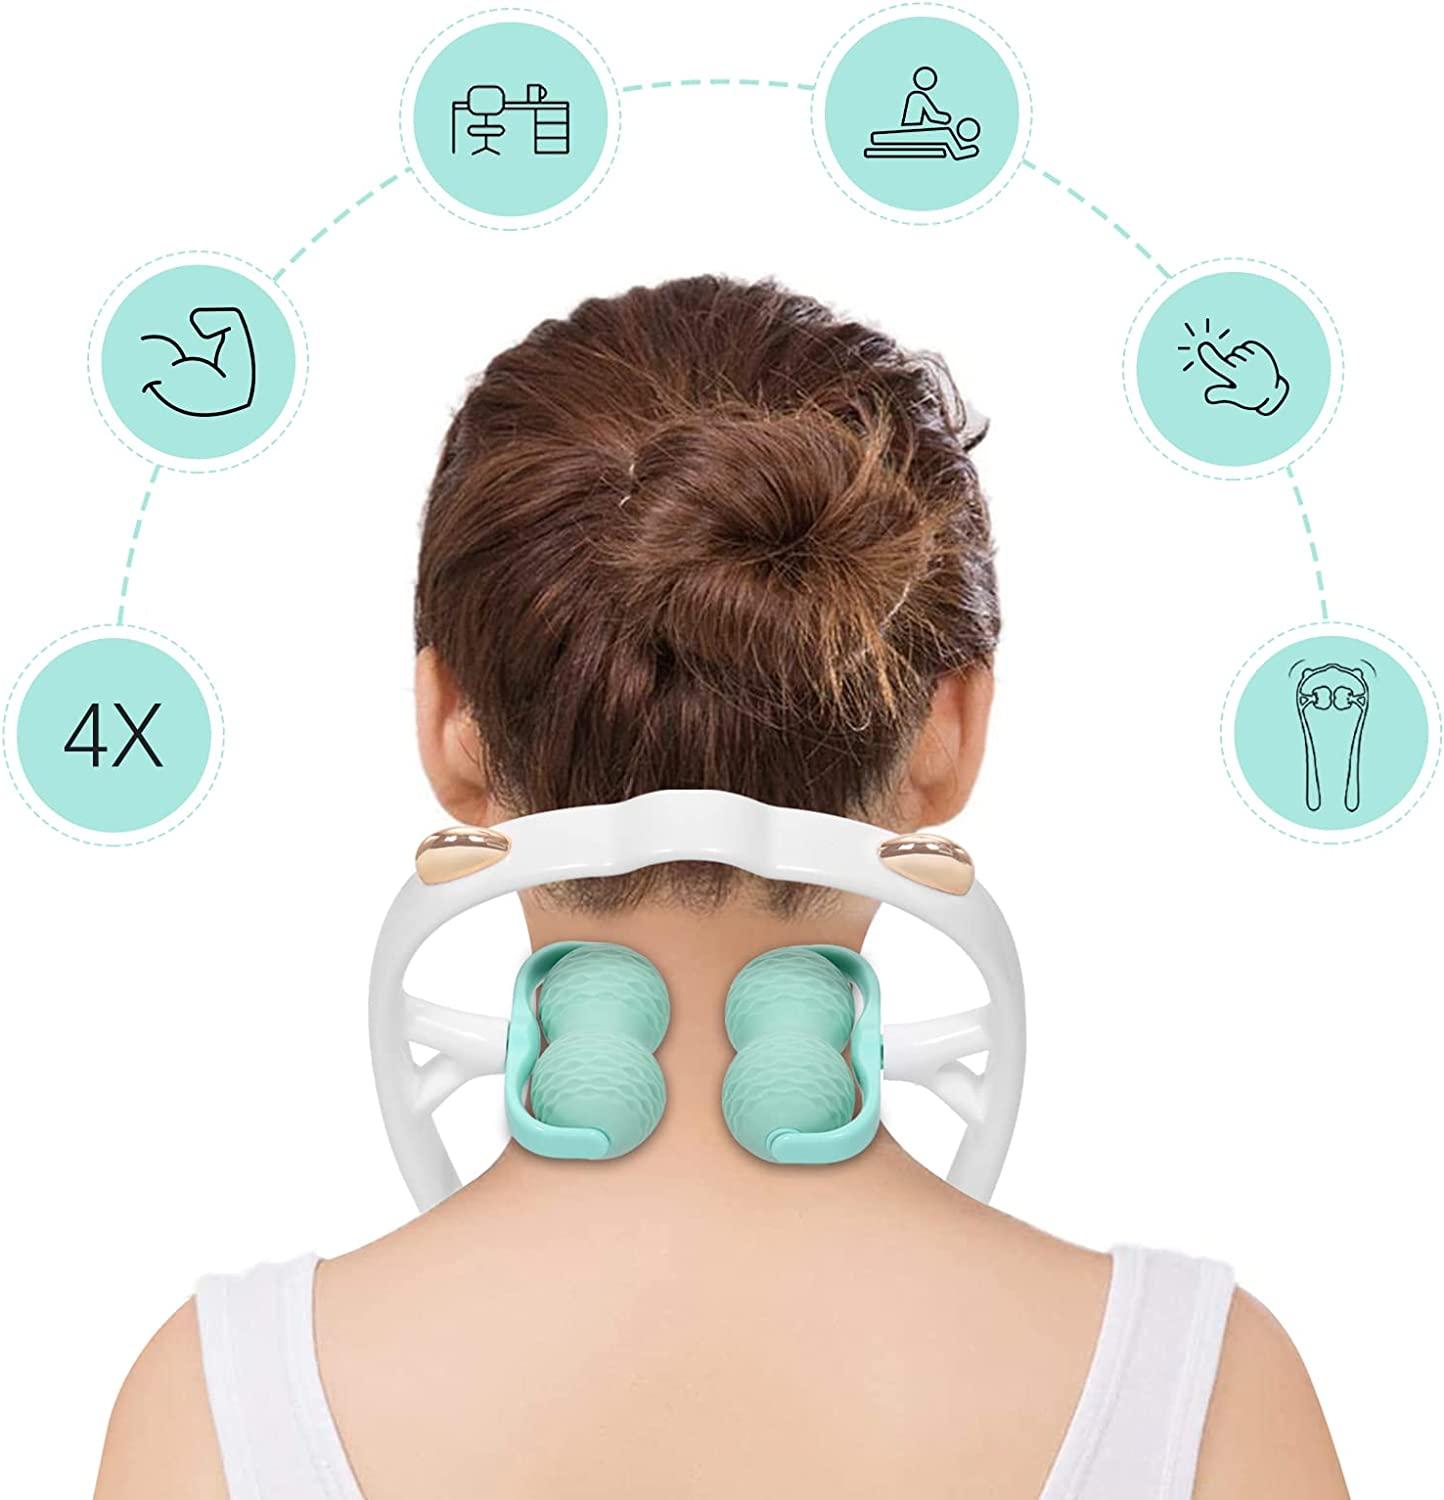 Handheld Neck Shoulder Massager Tool